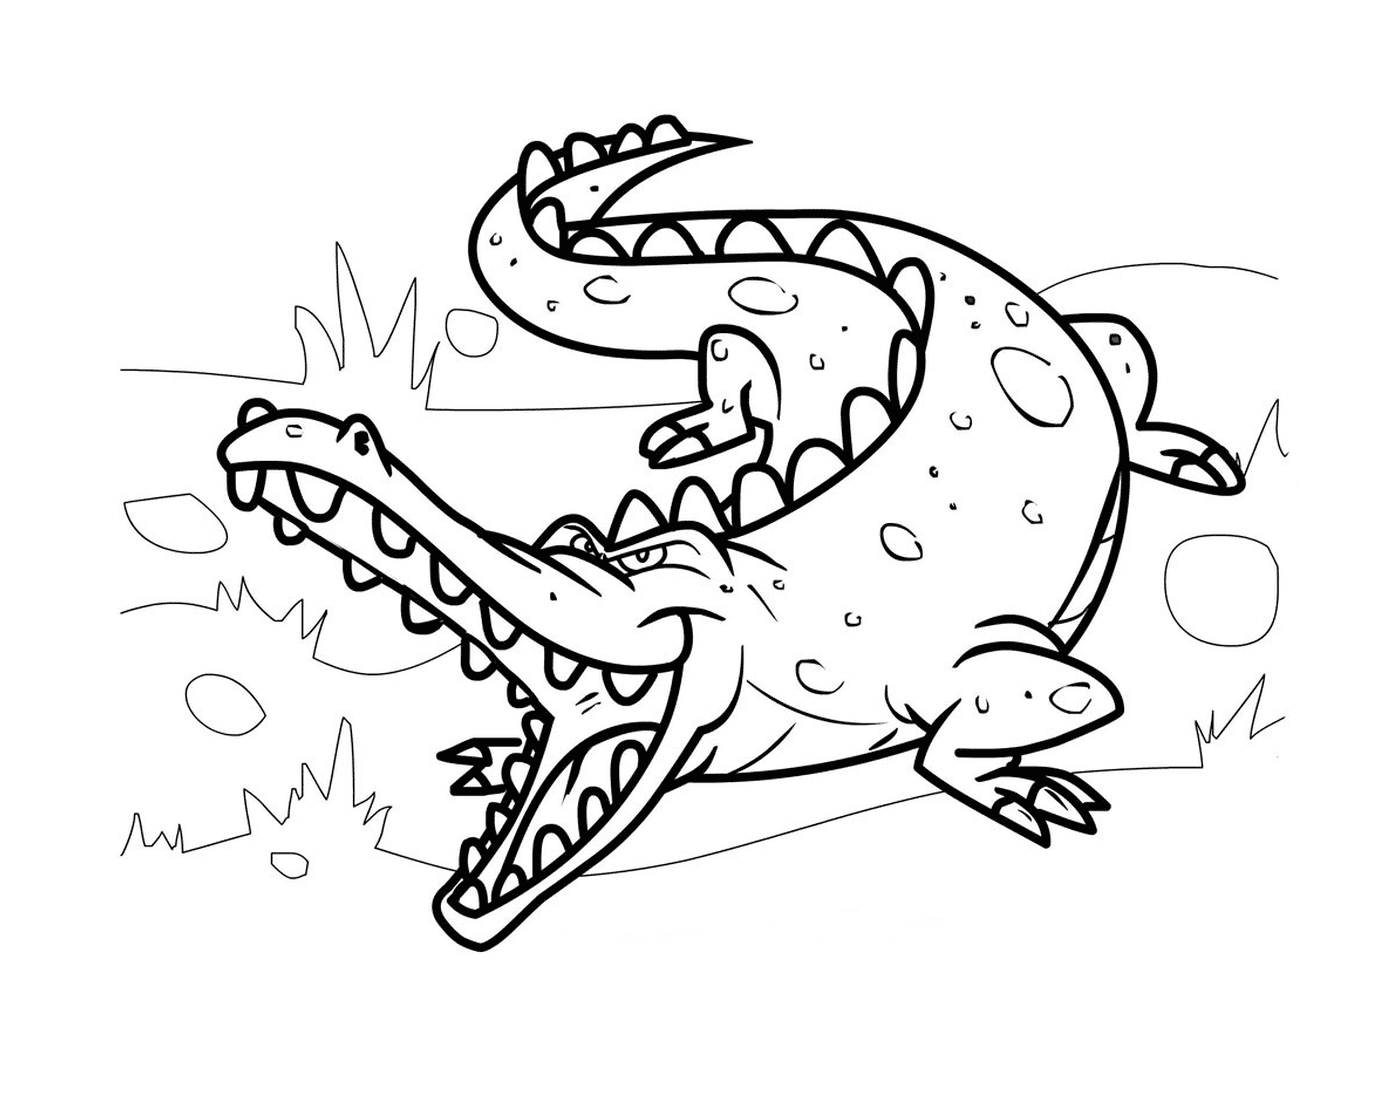  卡通风格的鳄鱼 